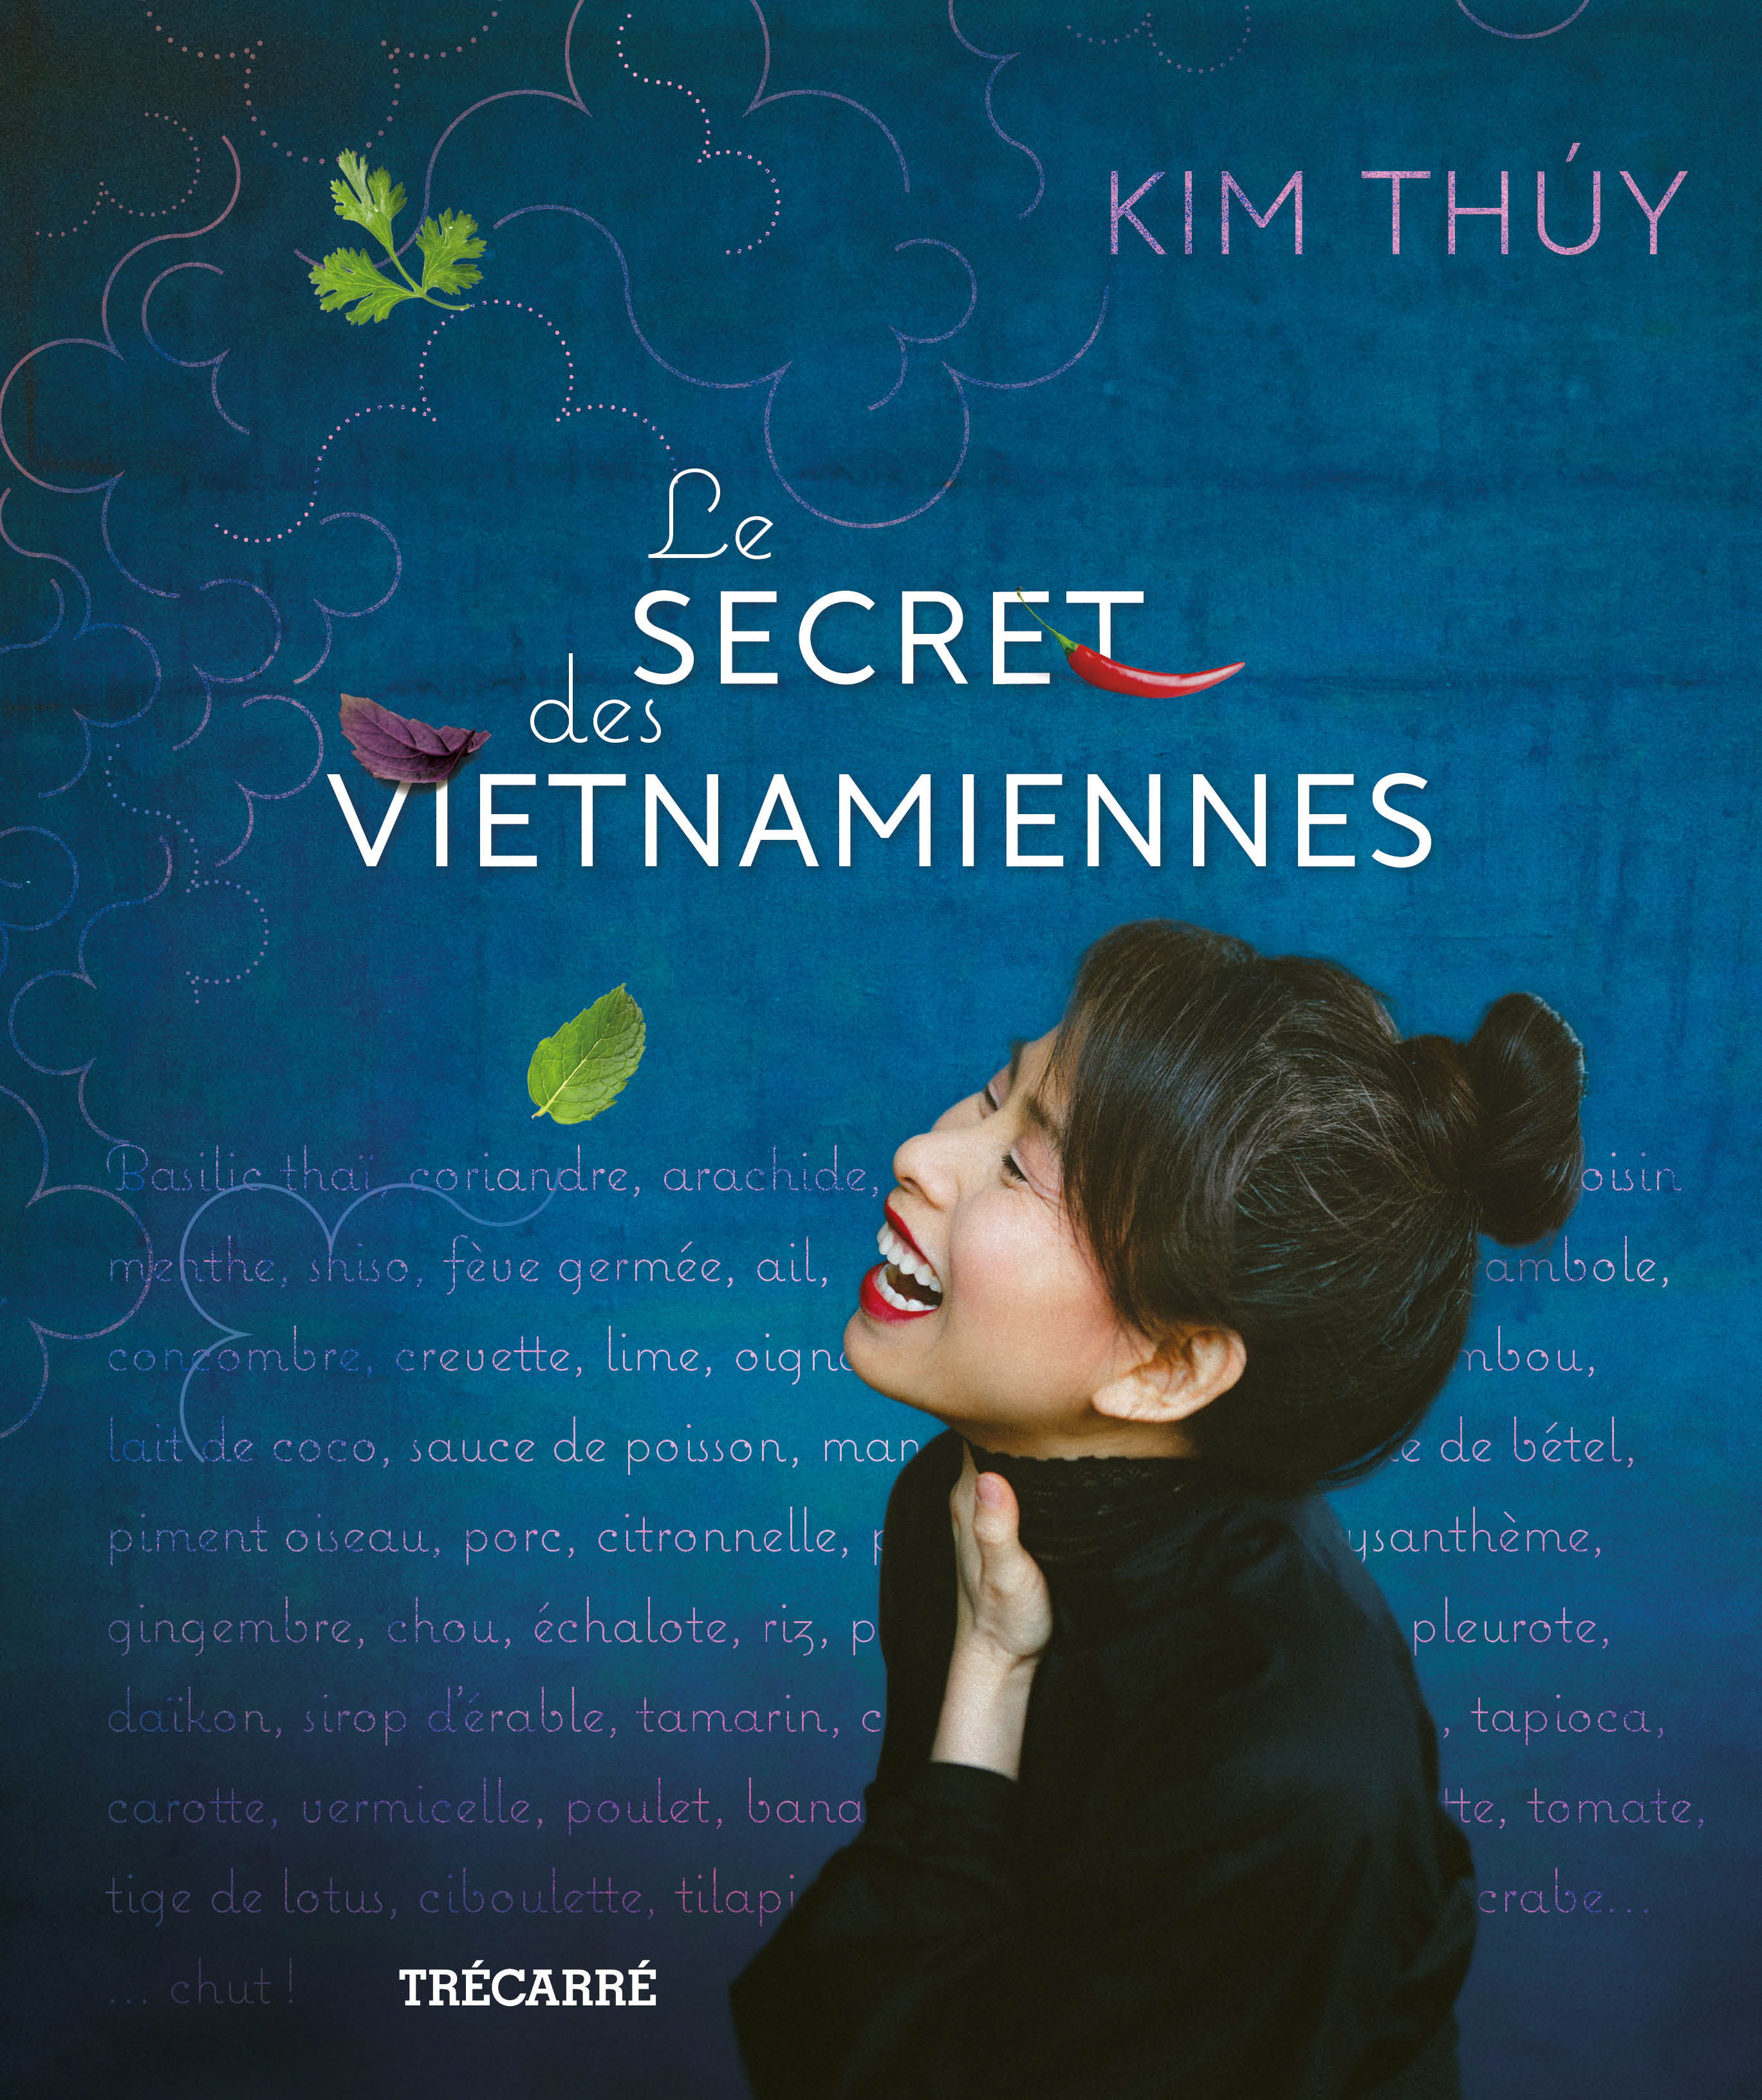 alt="Secret-des-Vietnamiennes"